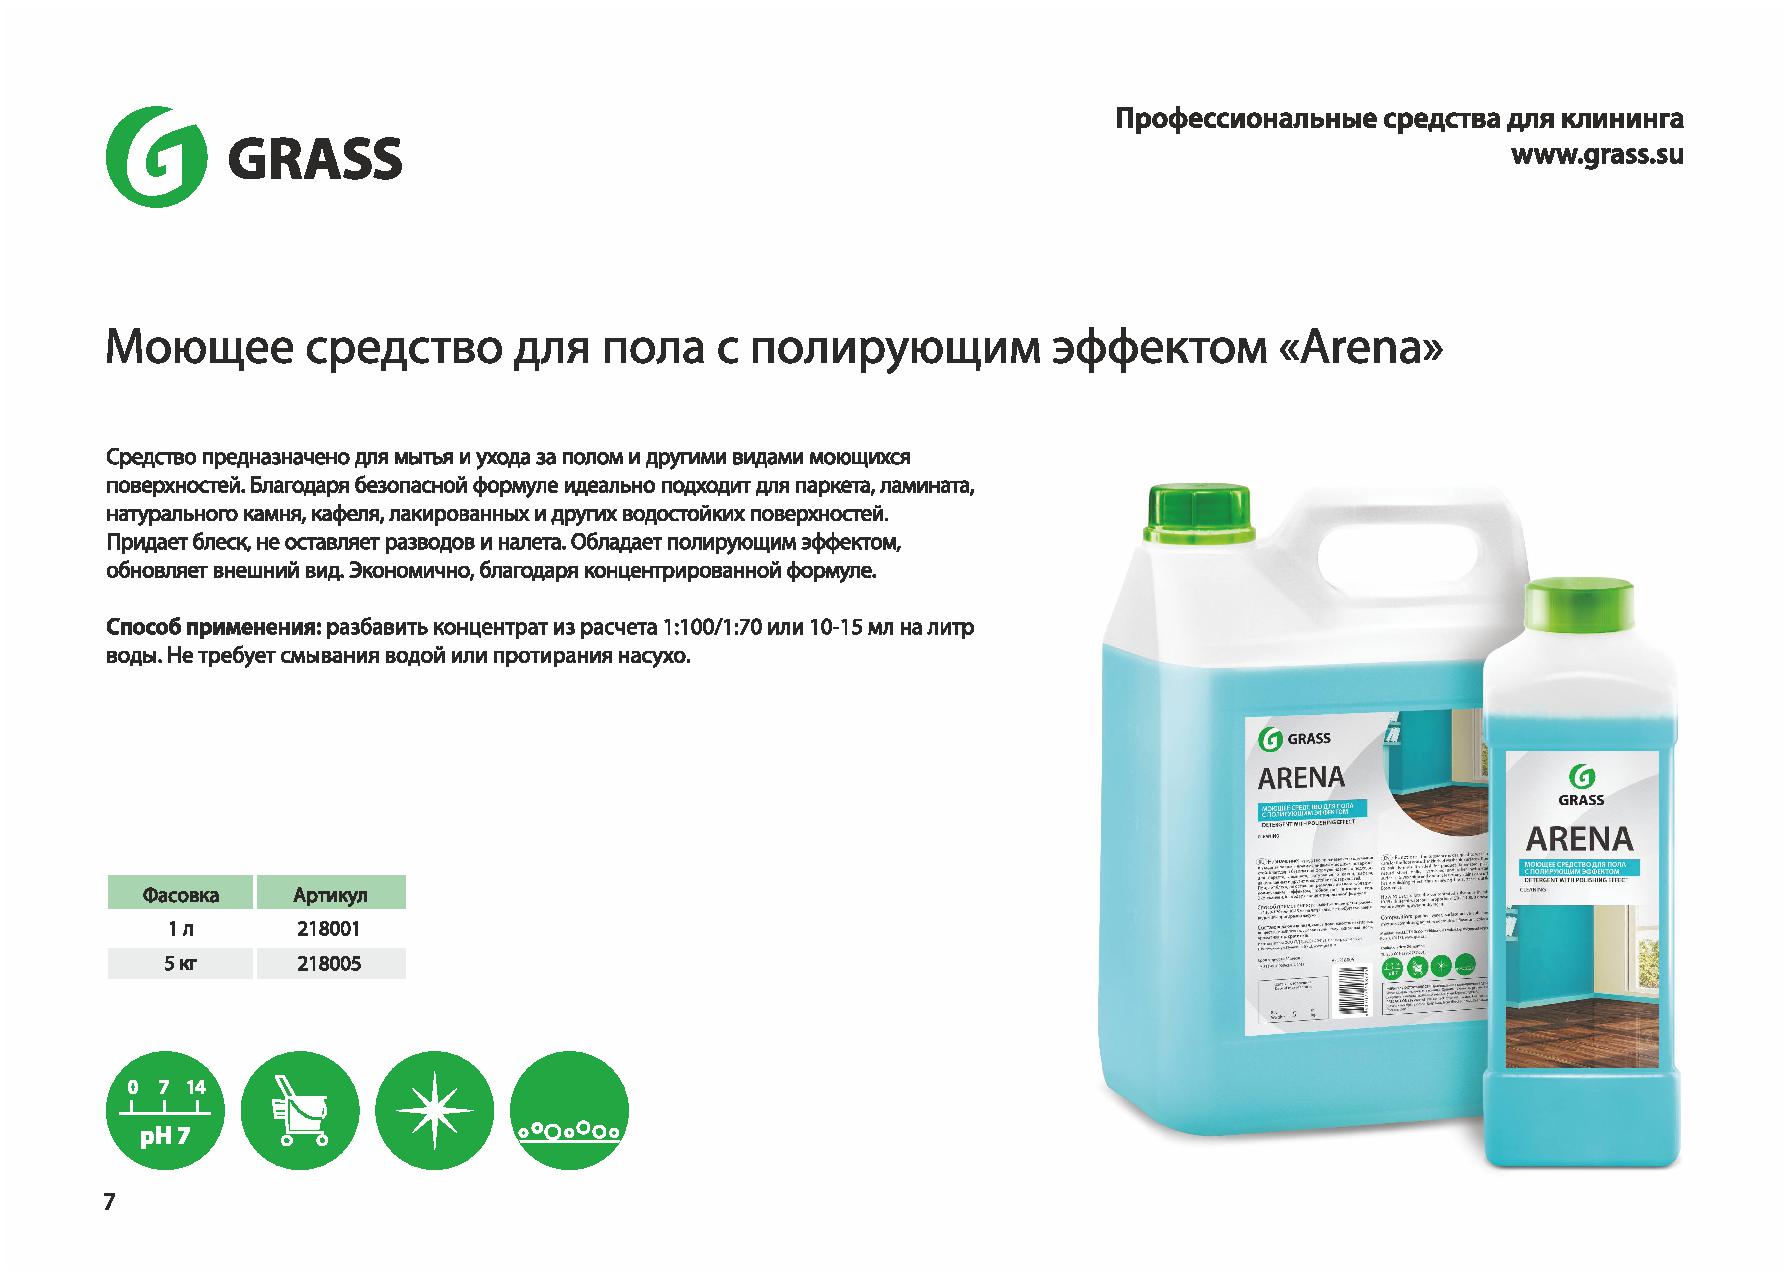 Моющий организация средство. Grass средство с полирующим эффектом для пола "Arena" 5л (арт-218005). Моющее средство. Реклама средства для мытья посуды. Реклама моющего средства.